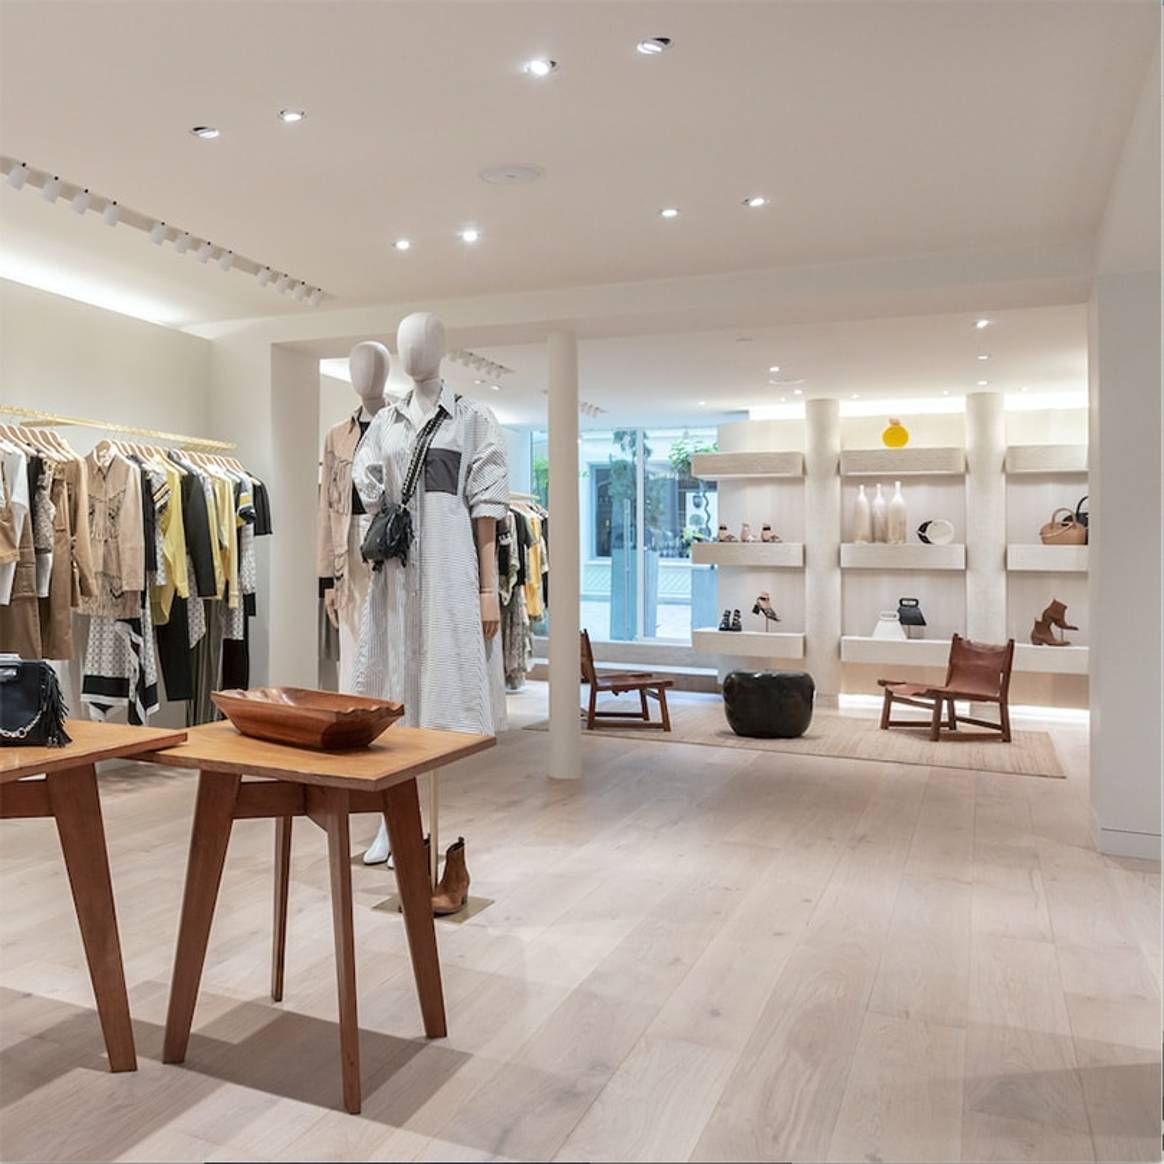 En images : découvrez la nouvelle boutique Maje rue Saint-Honoré